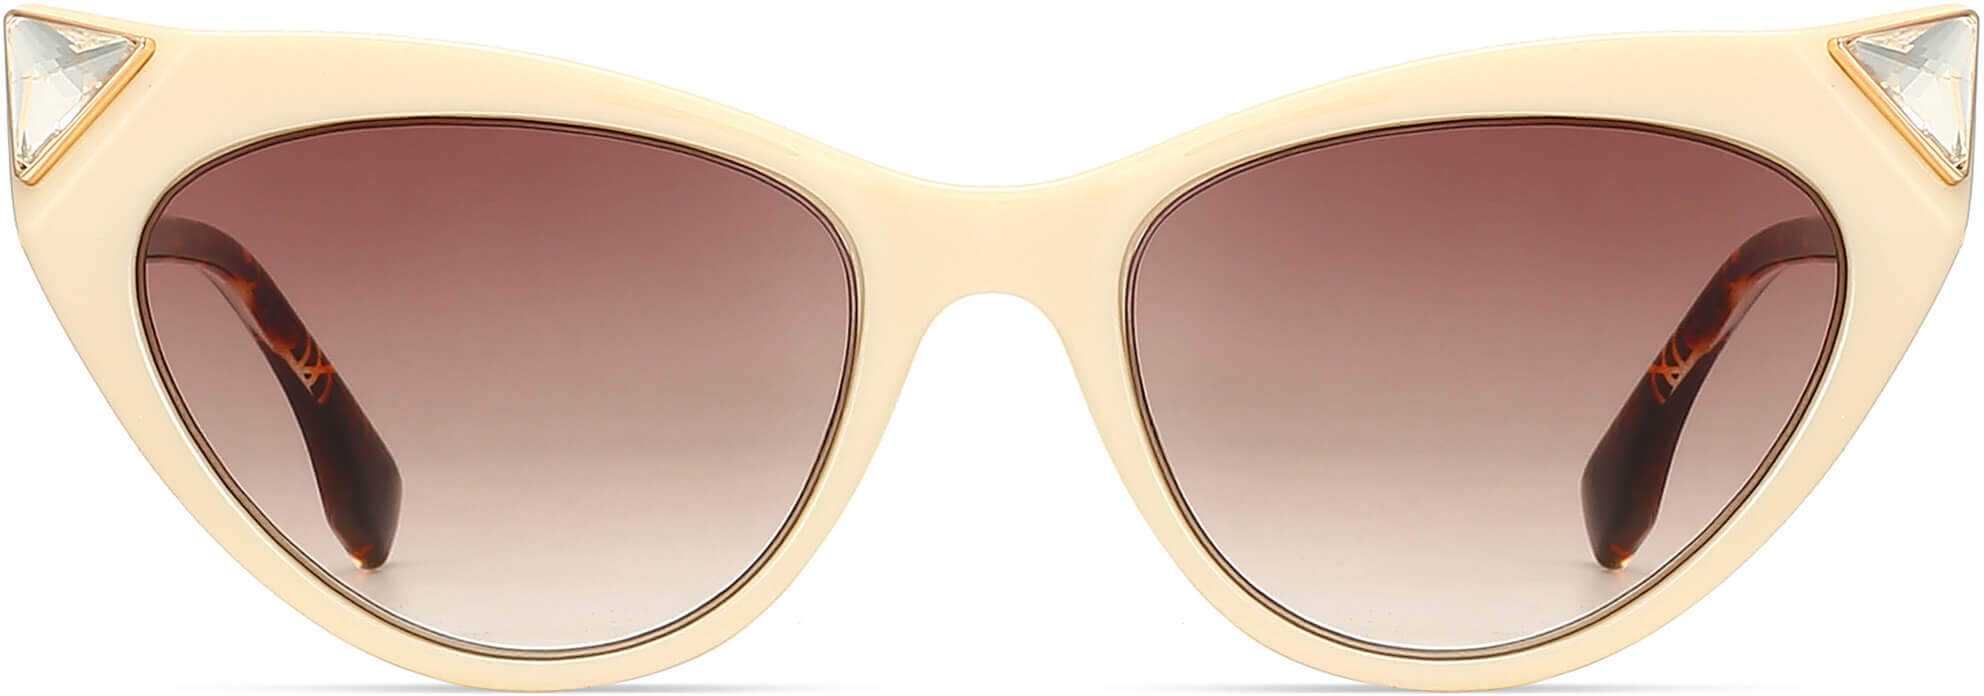 Katies White Plastic Sunglasses from ANRRI